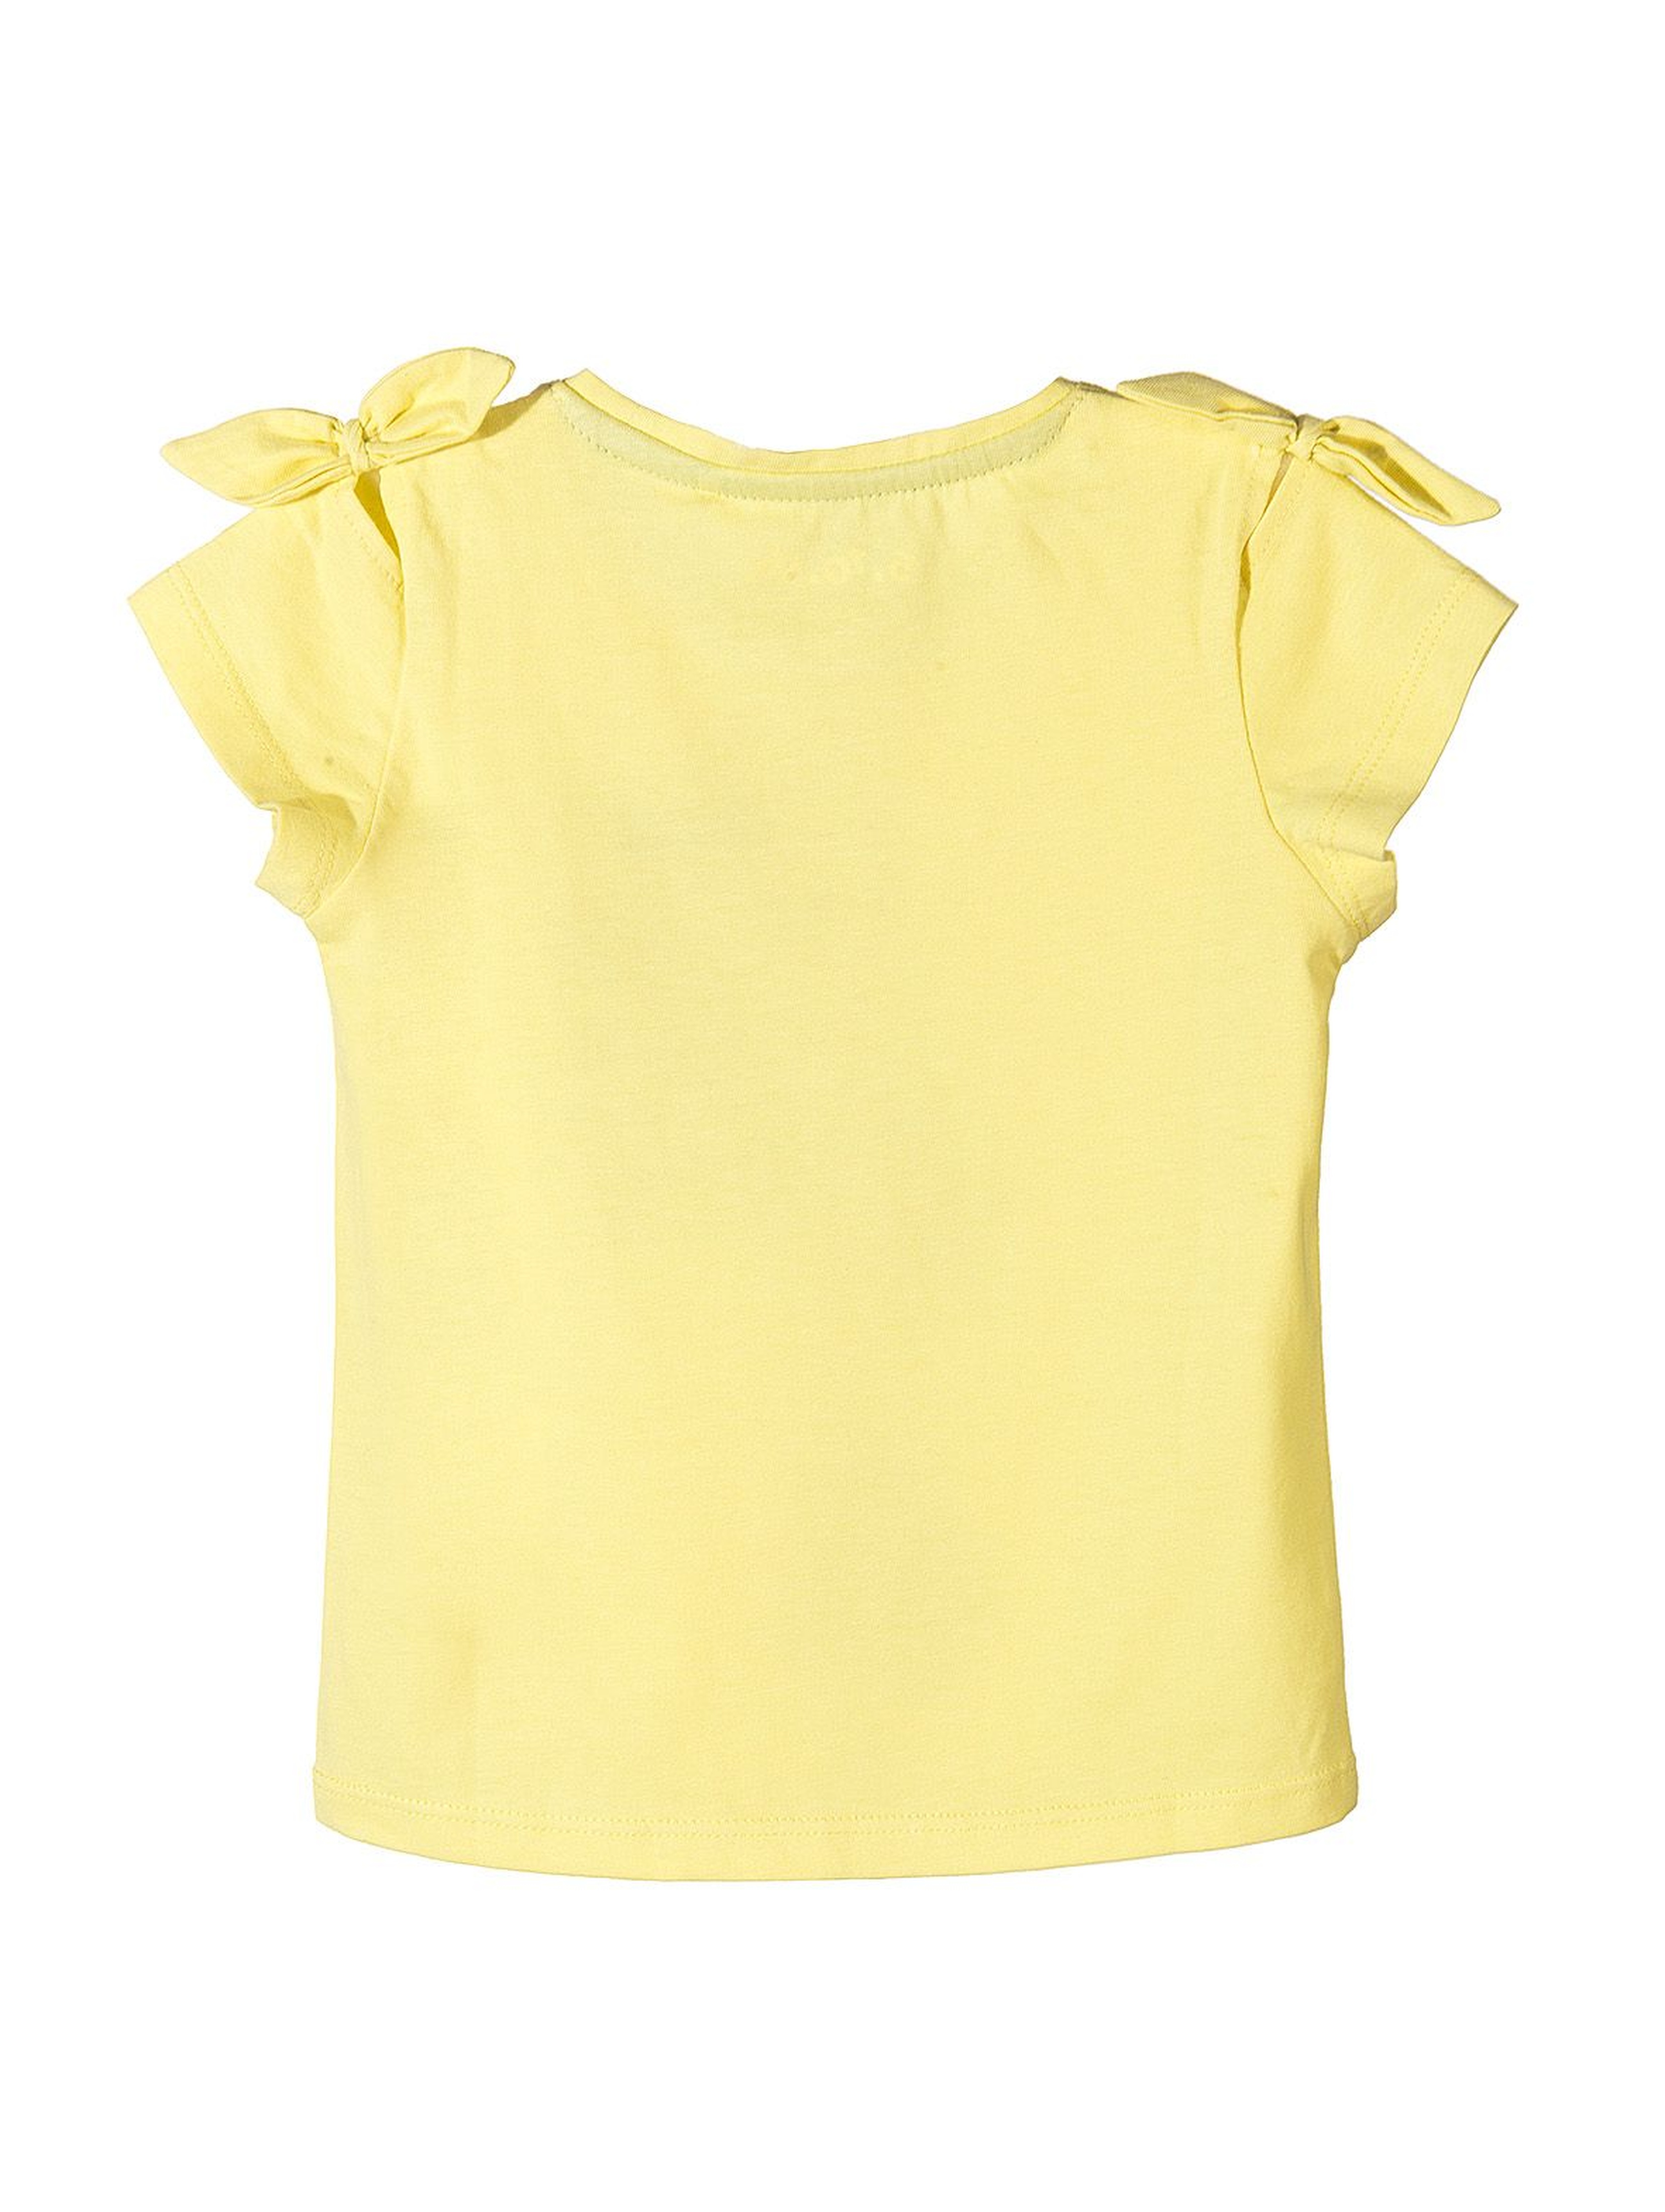 Koszulka dla dziewczynki żółta z papugą